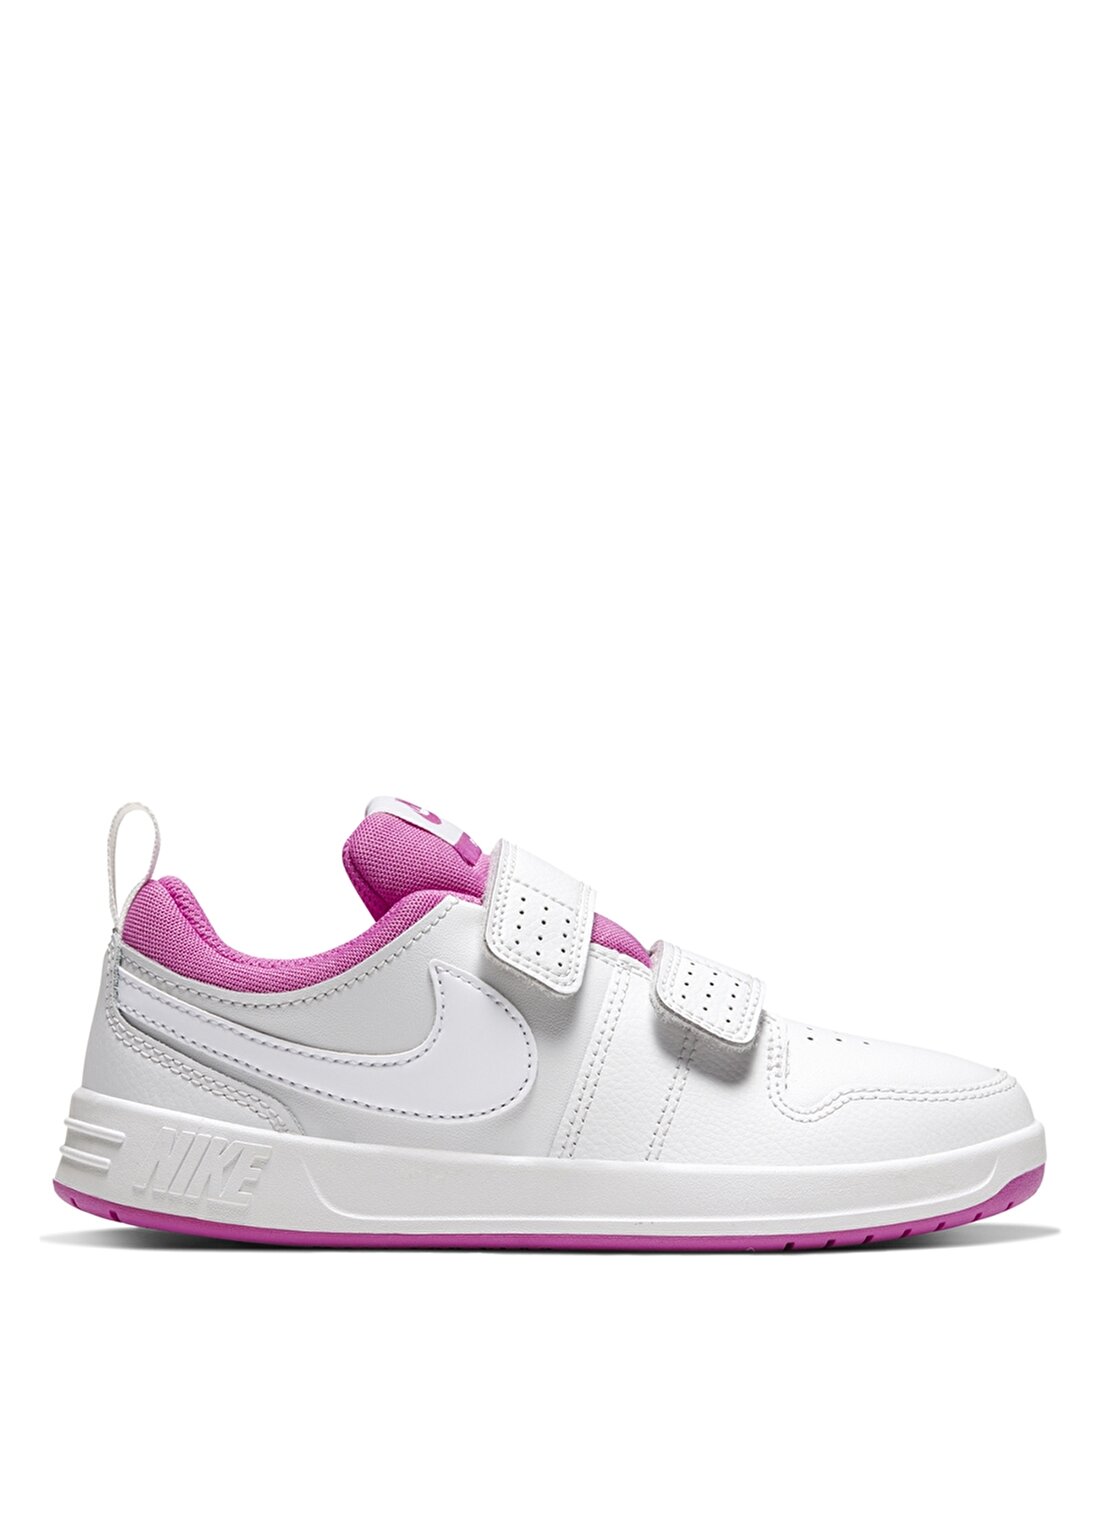 Nike Pico 5 (PSV) Çocuk Yürüyüş Ayakkabısı